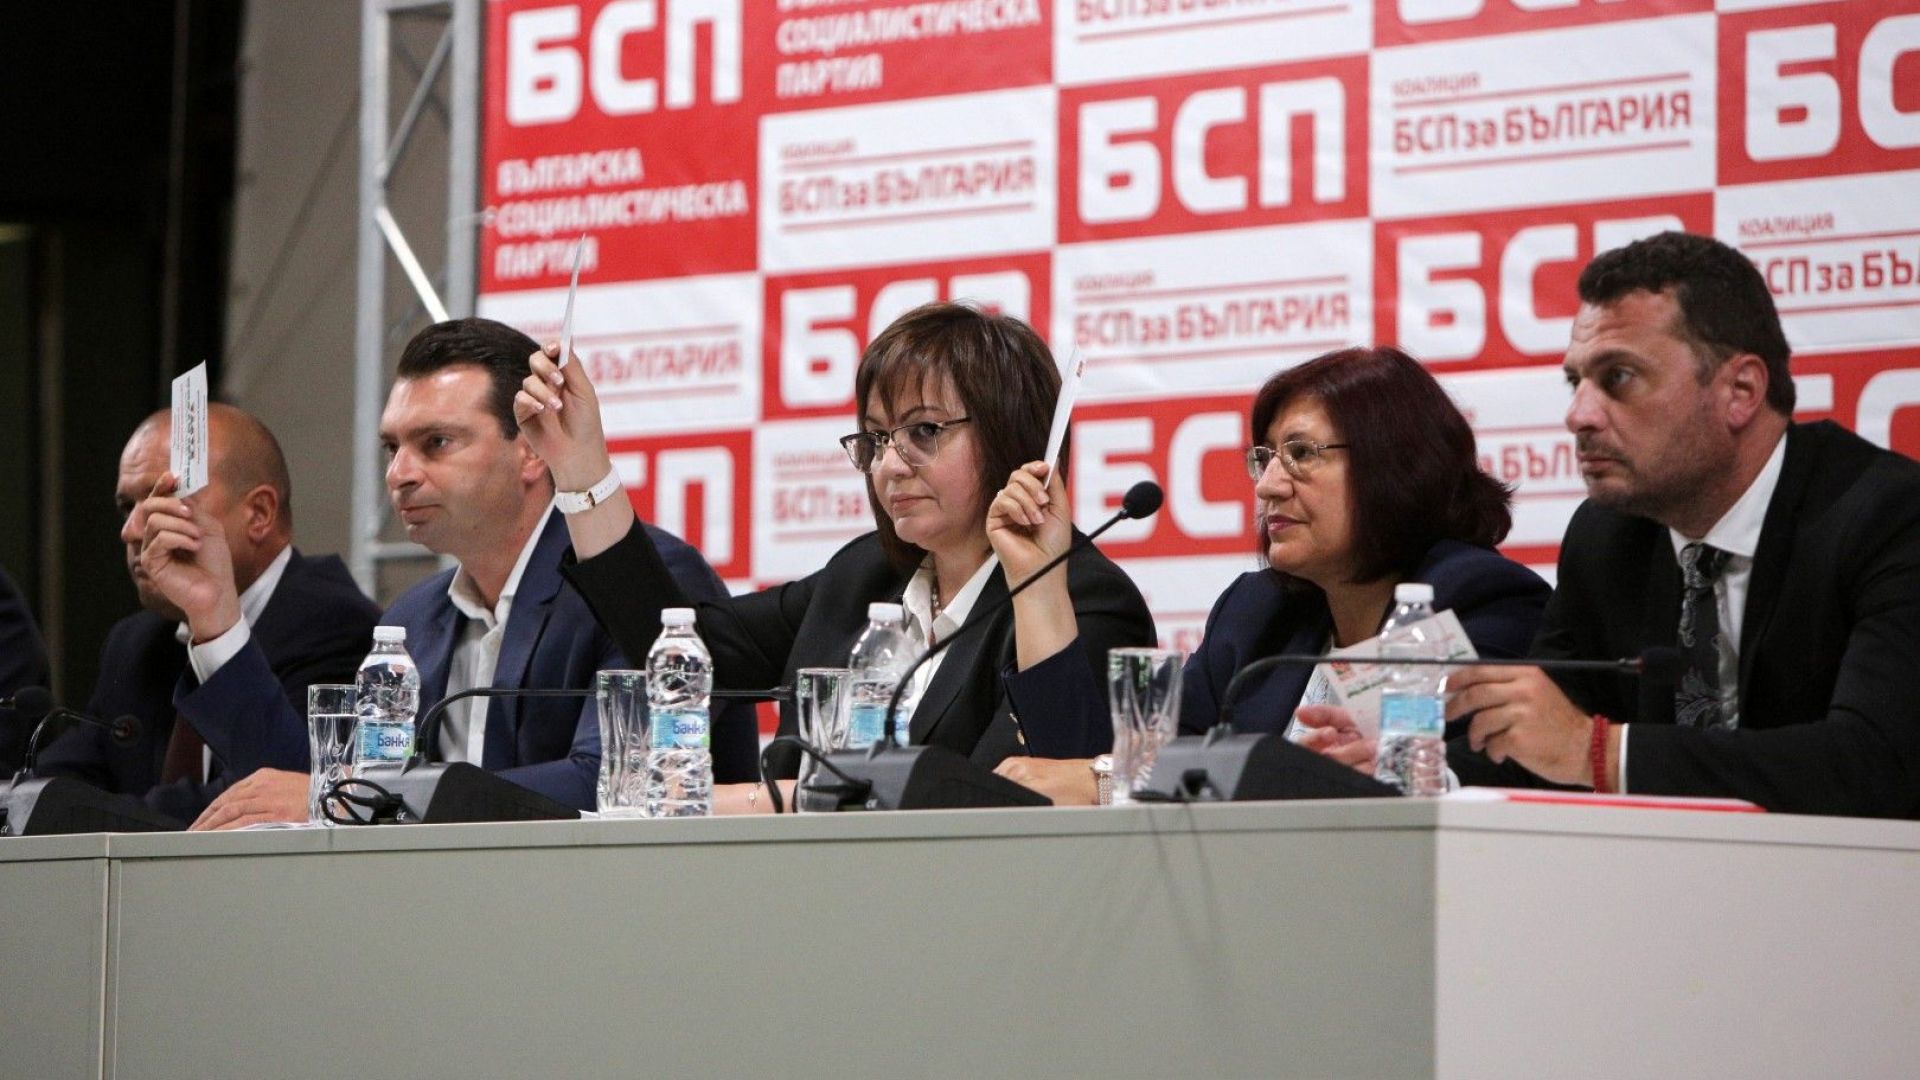 Градската конфереция на БСП в София реши да подкрепи кандидатурата